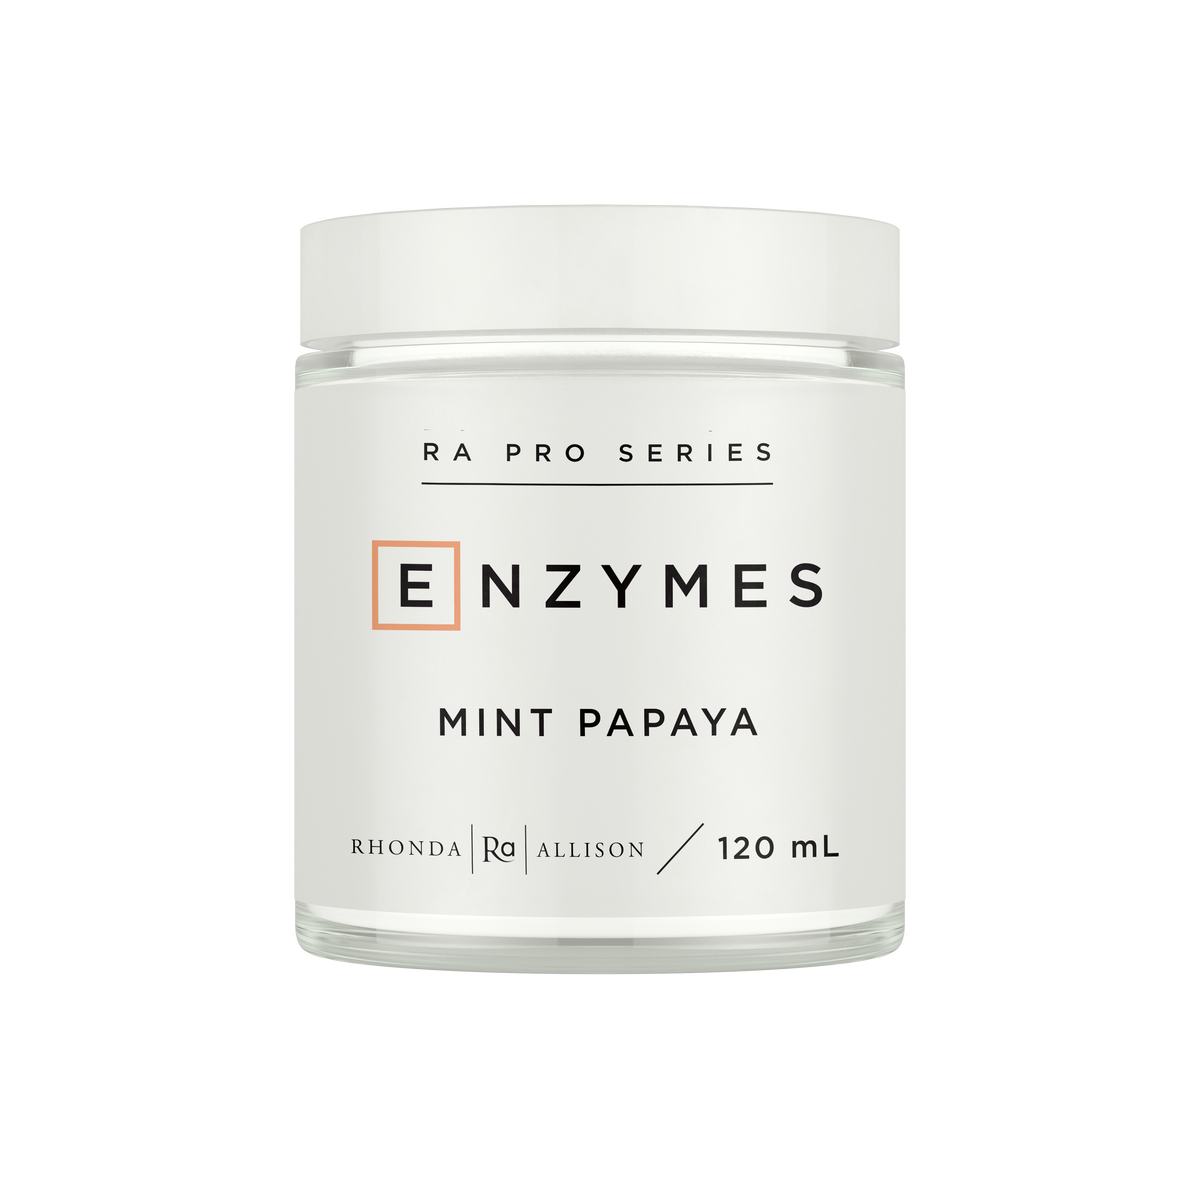 Mint Papaya Enzyme